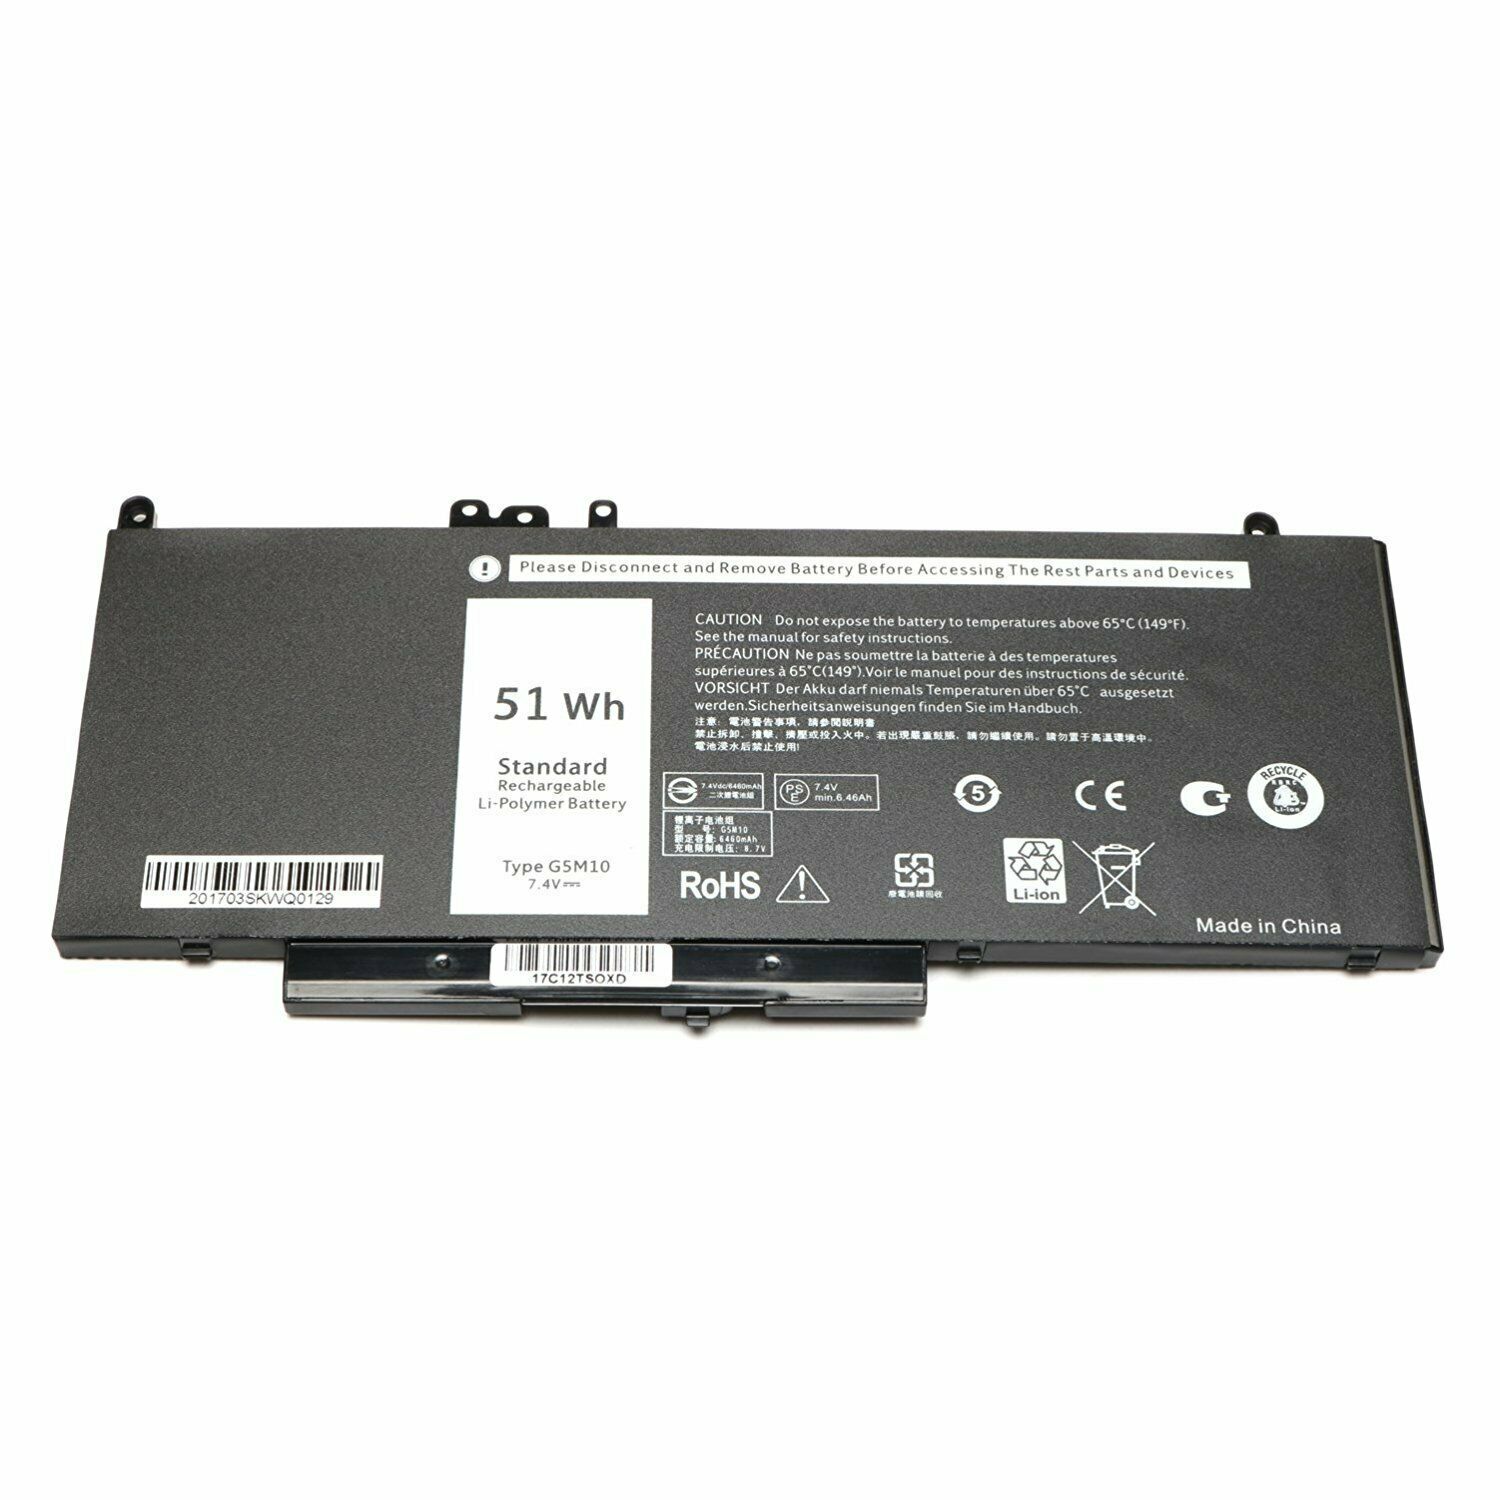 Bateria para G5M10 WYJC2 1KY05 Dell Latitude E5450 E5470 E5550 E5570